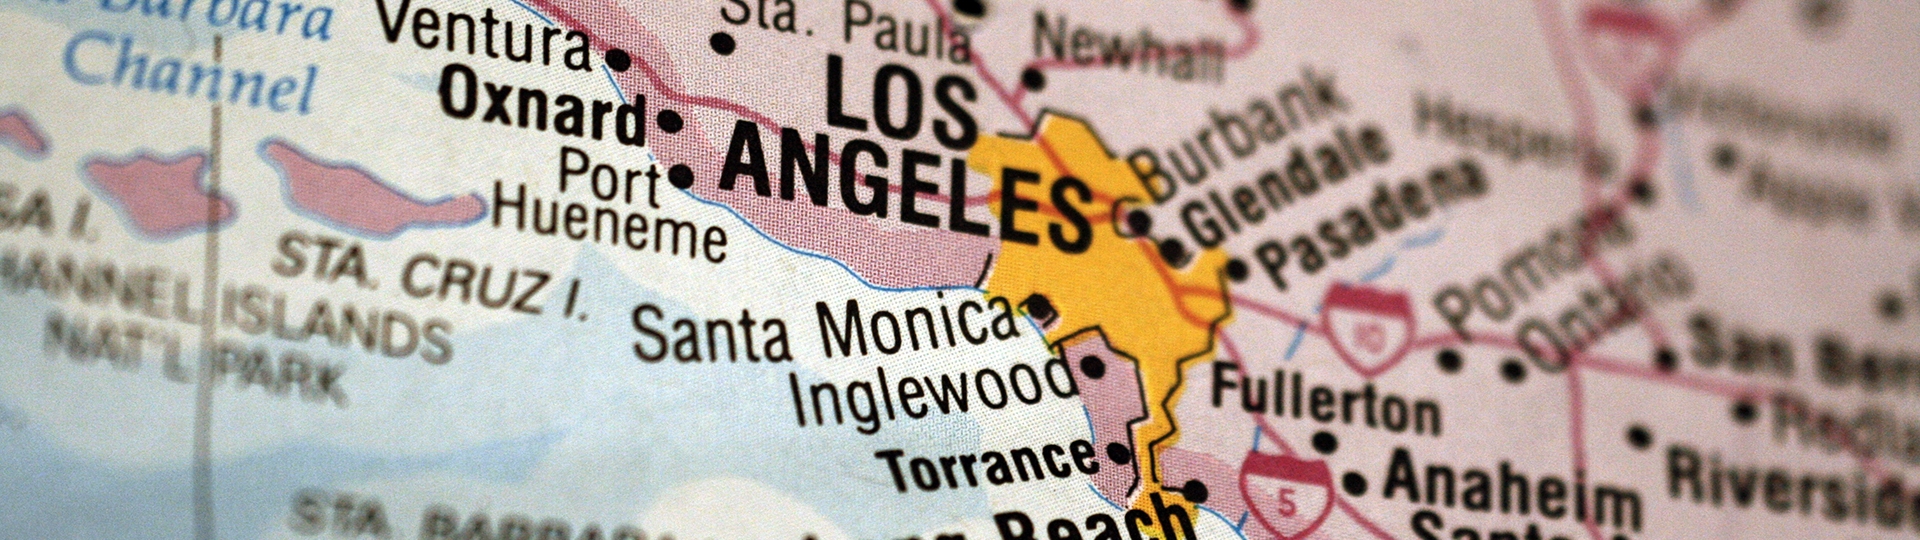 Դրոշ, որի վրա պատկերված է Los Angeles-ի շրջանն իր մոտակայքով, որտեղ ընդգծված են Los Angeles-ը և նրա շրջակա համայնքները: